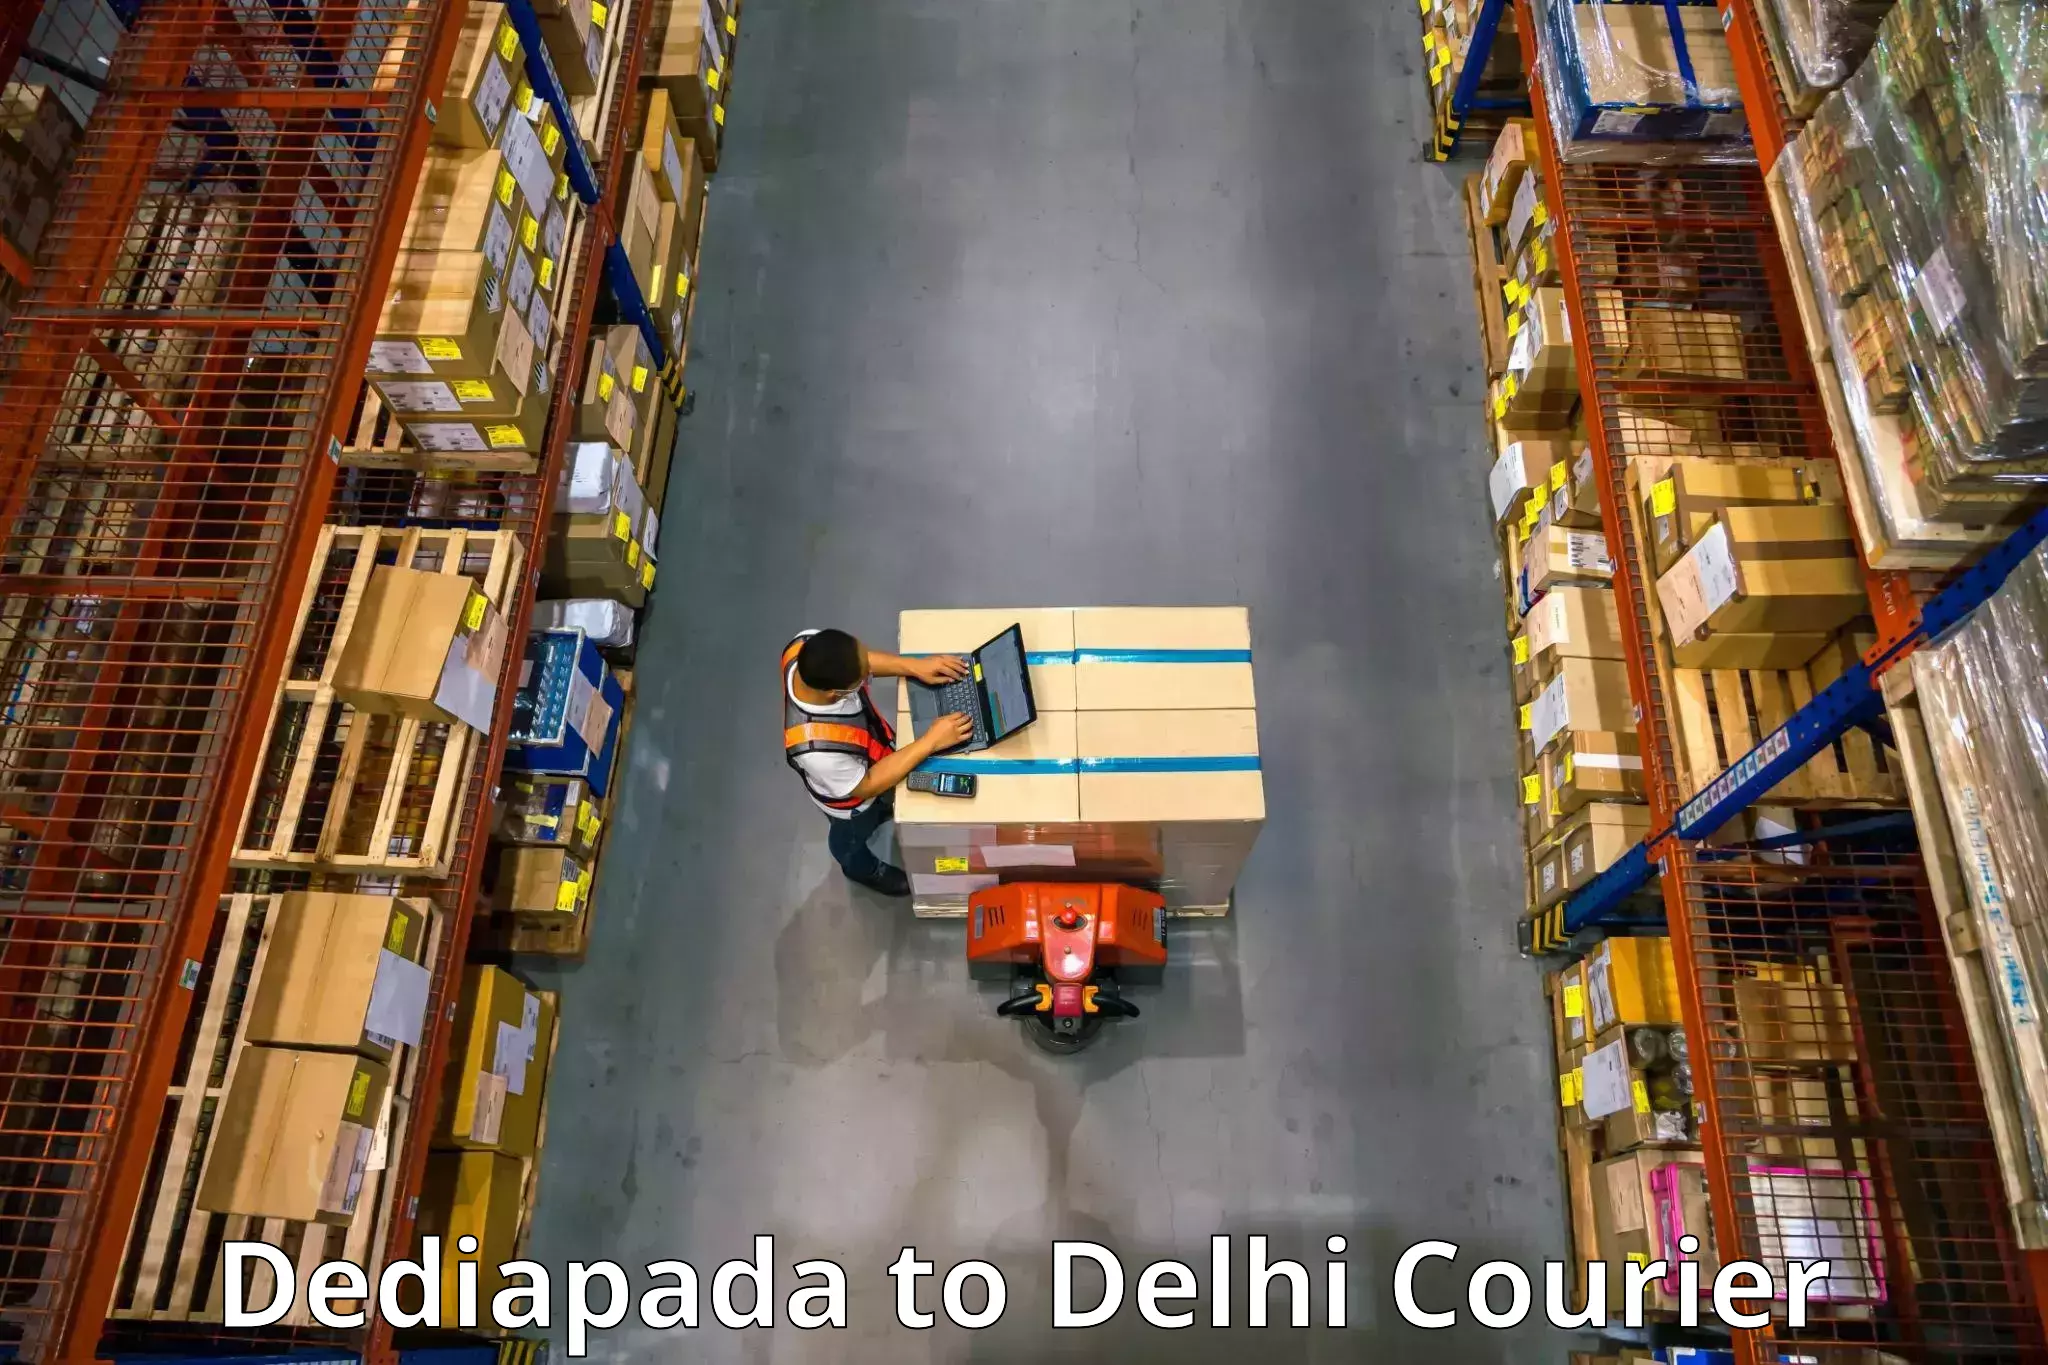 Efficient furniture movers Dediapada to Lodhi Road